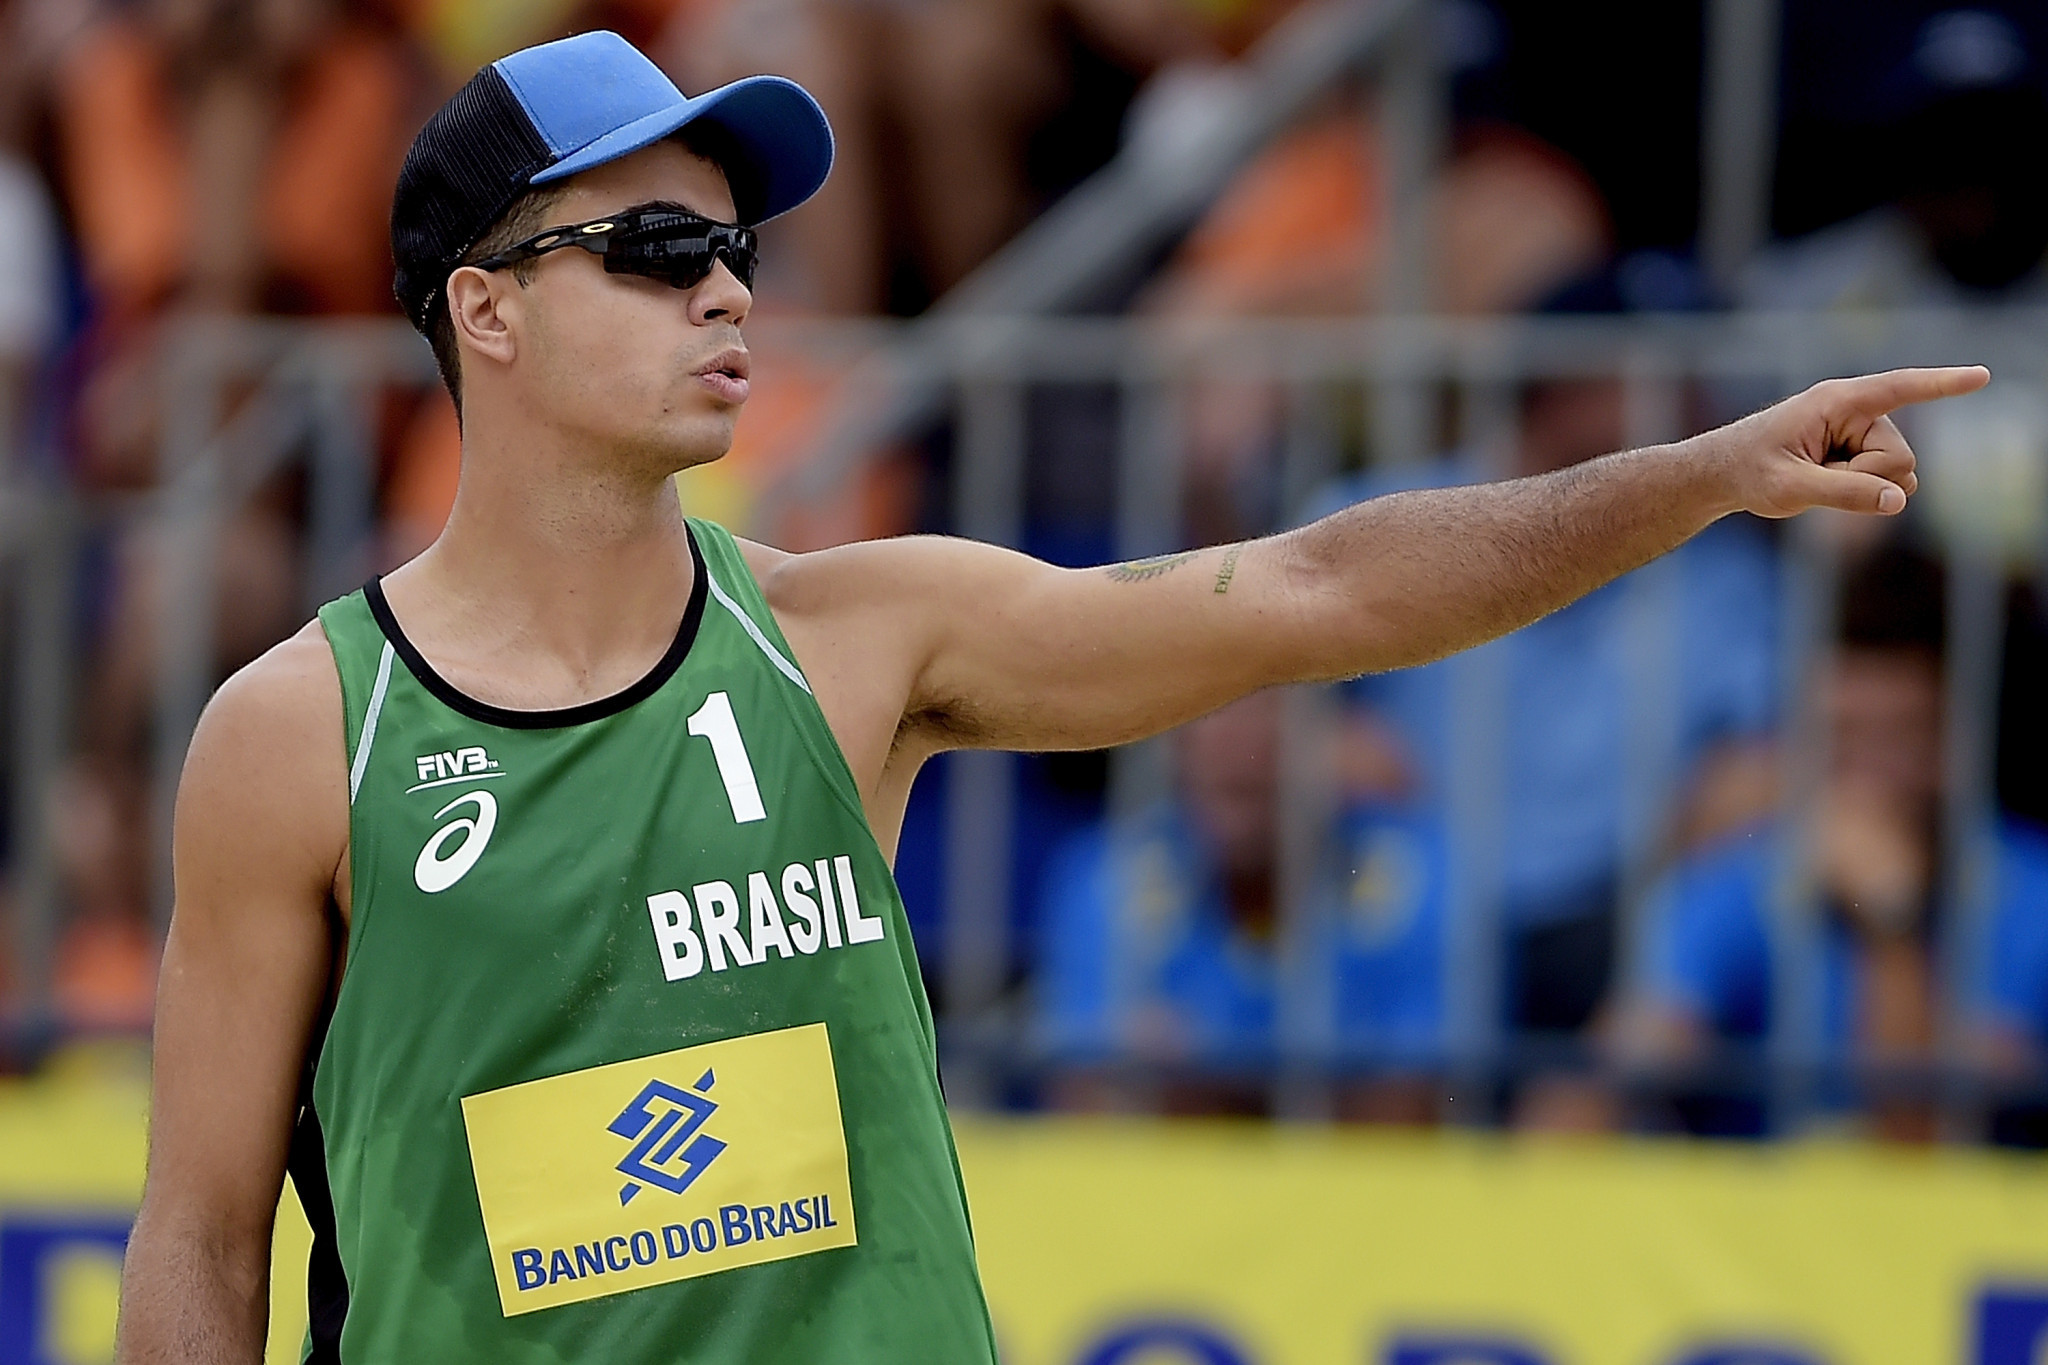 Gustavo Albrecht Carvalhaes faisait partie du duo brésilien qui a choqué les meilleures têtes de série de la Katara Beach Volleyball Cup © Getty Images